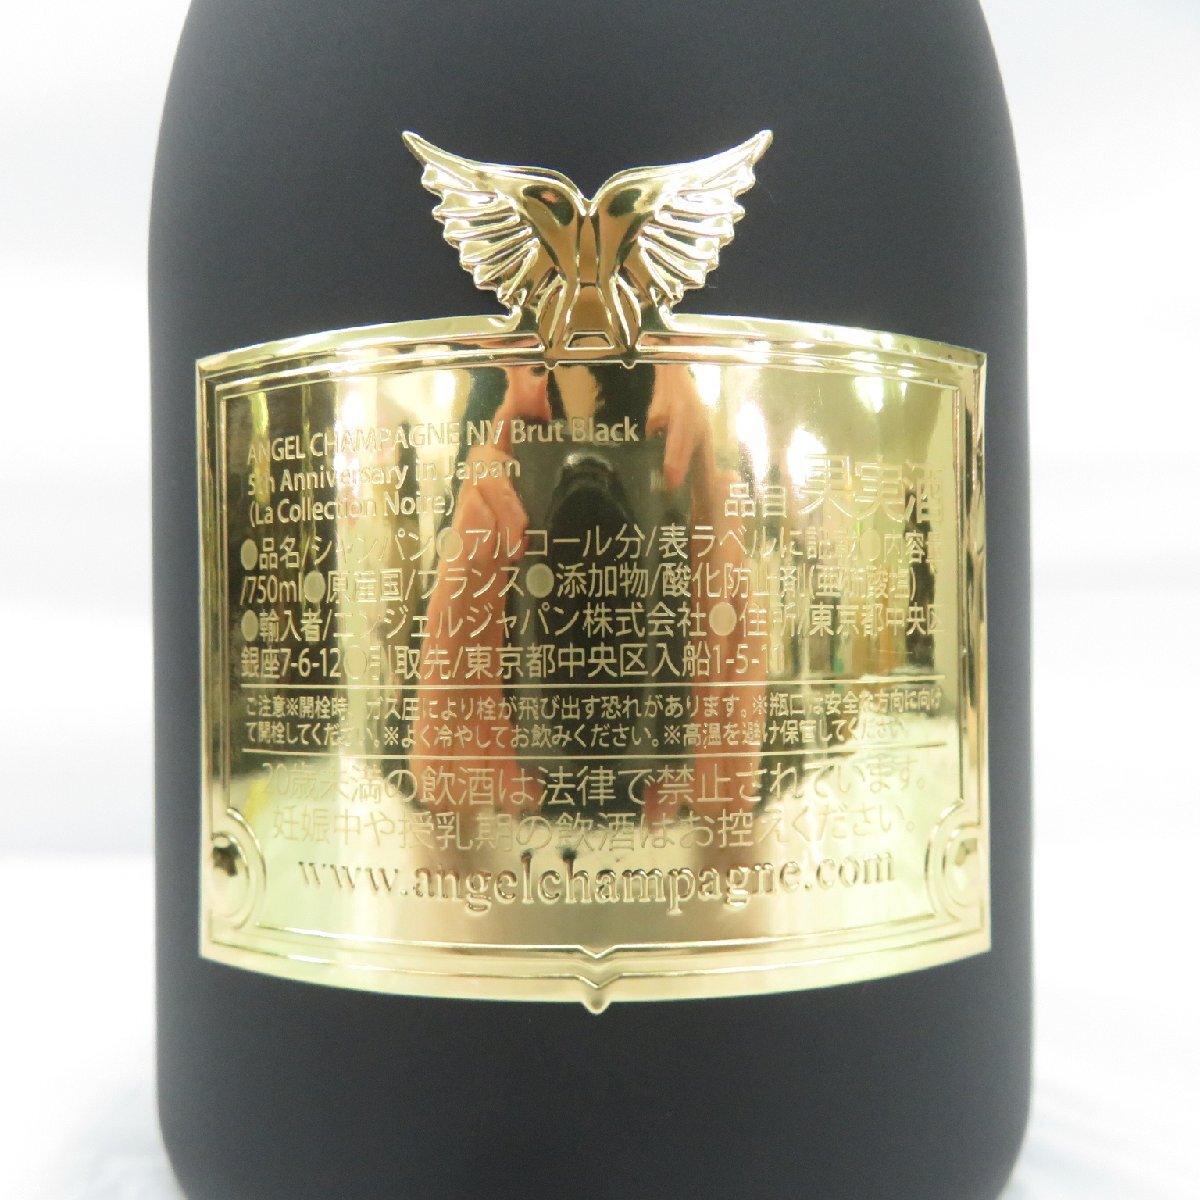 【未開栓】ANGEL エンジェル NV ブリュット ブラック 5周年記念 レザーラッチタイプ シャンパン 750ml 12.5% ケース付 11577708 0518_画像7